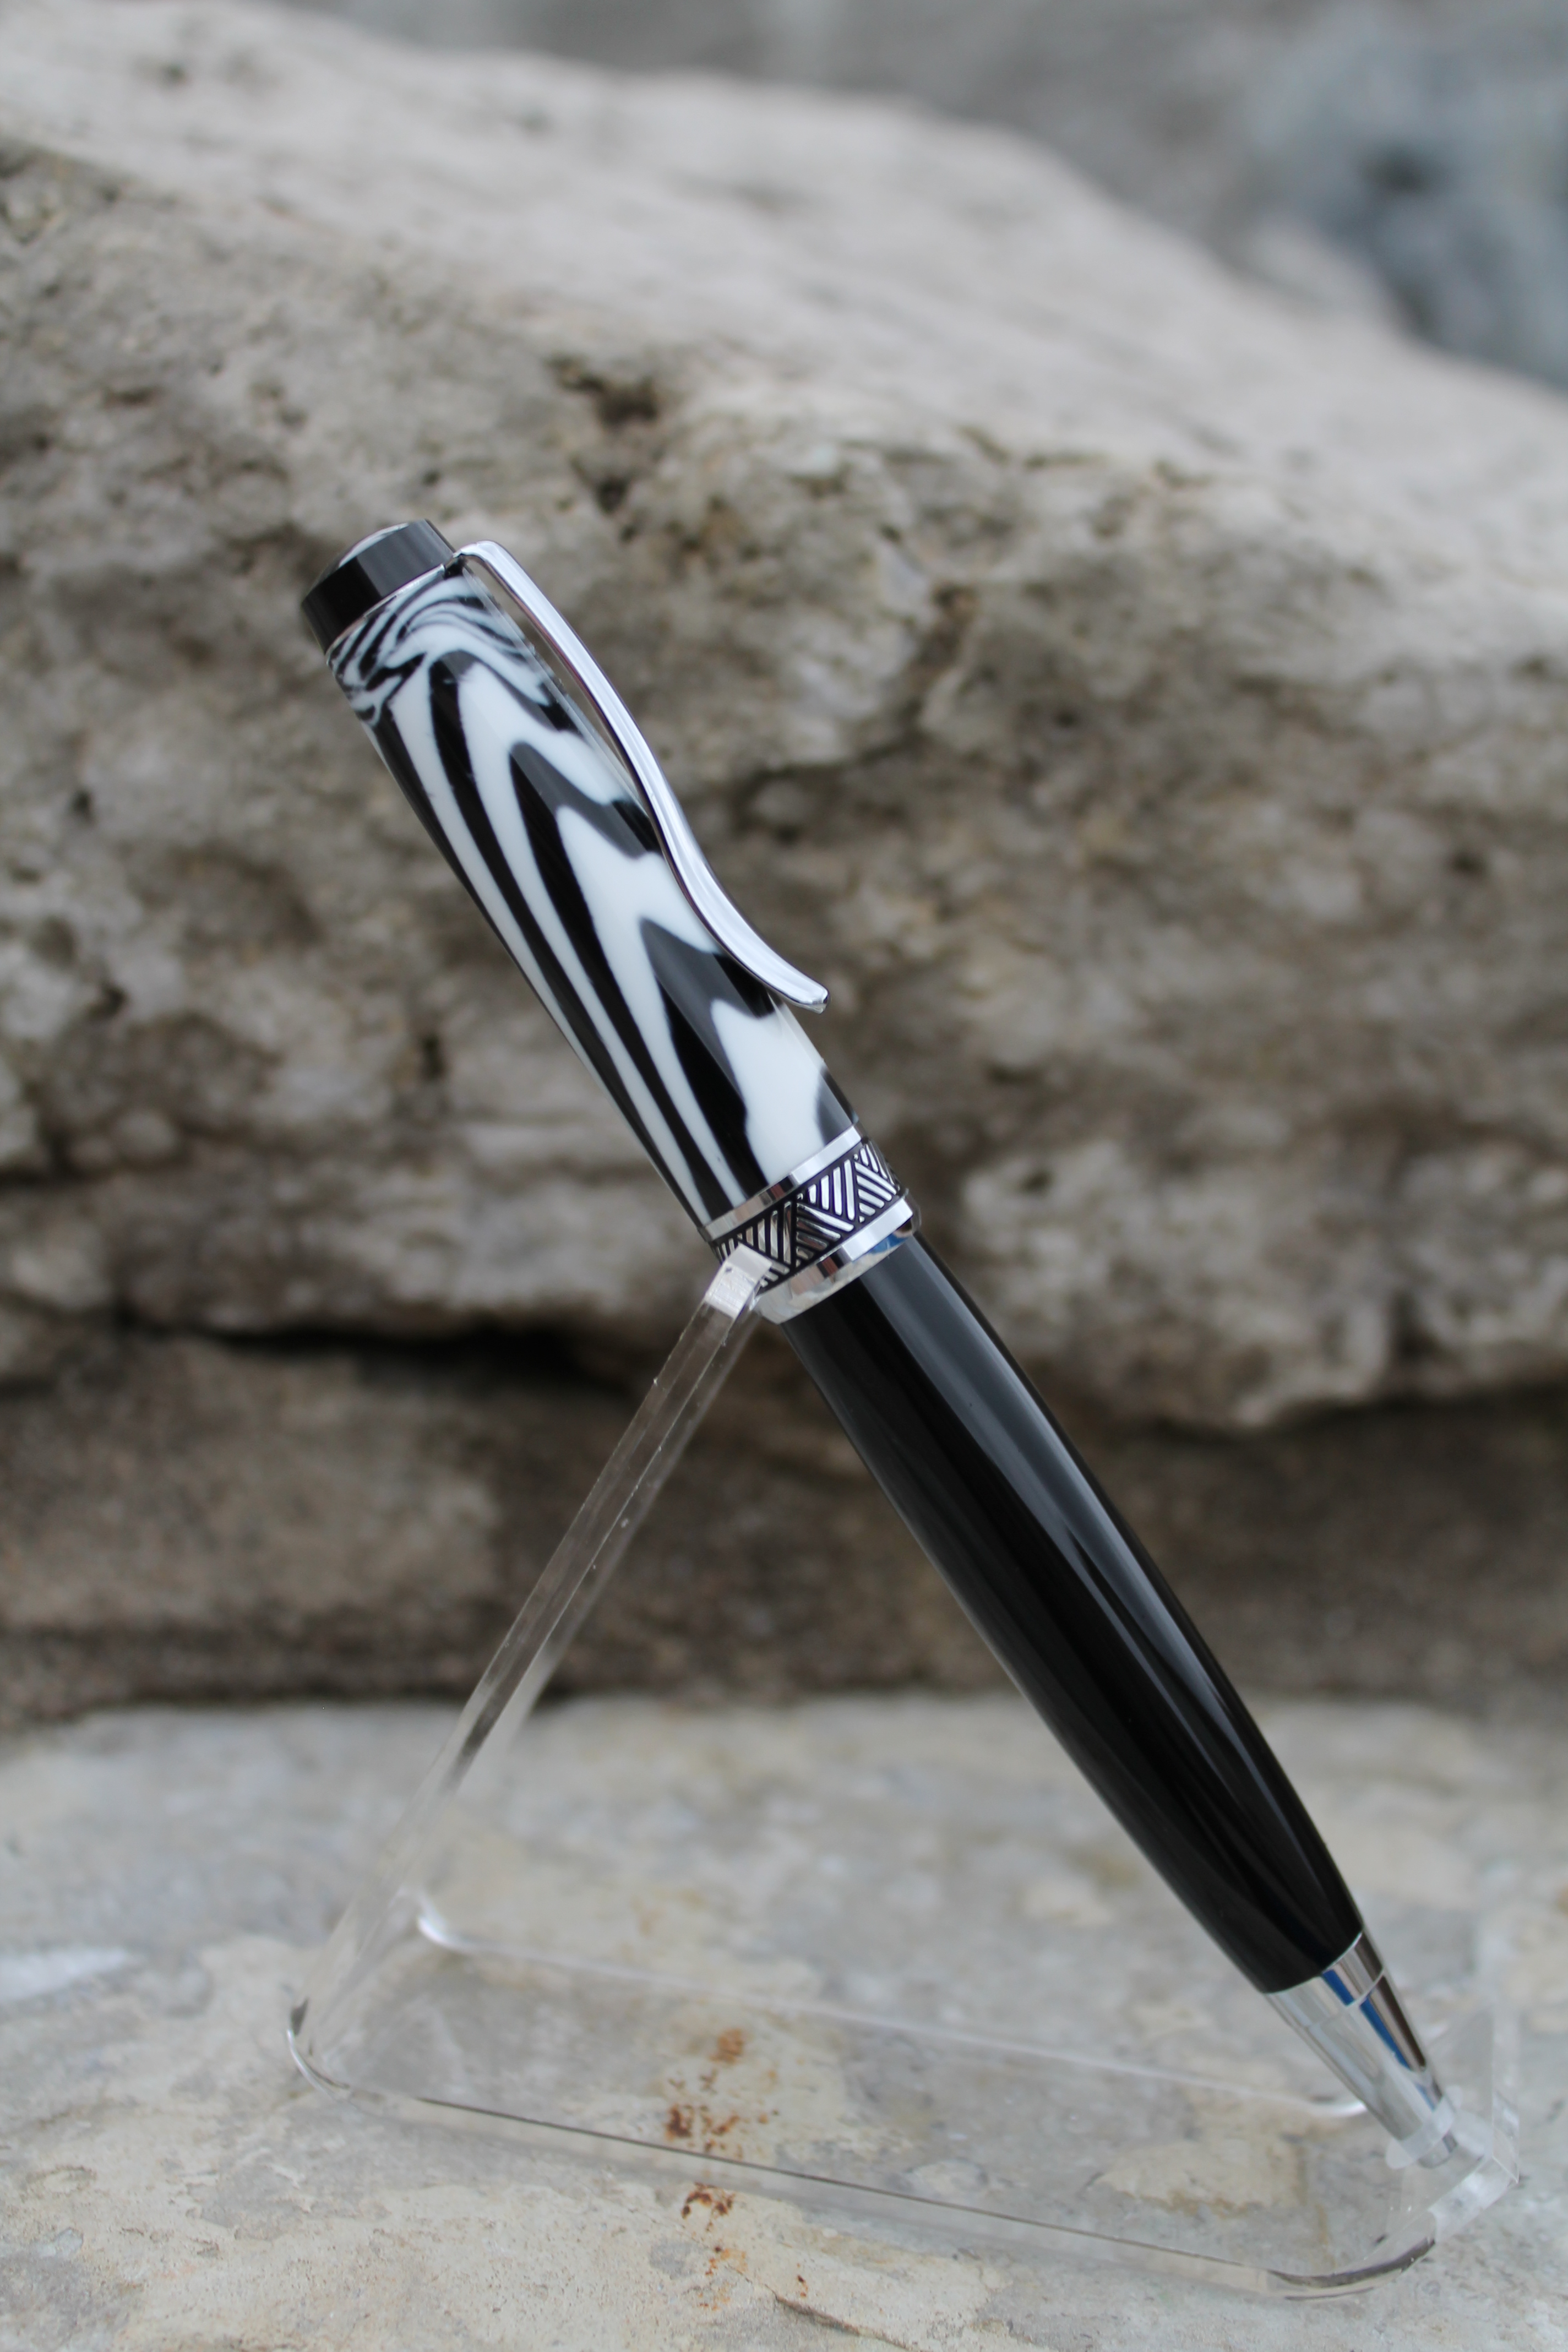 Zebra Pen